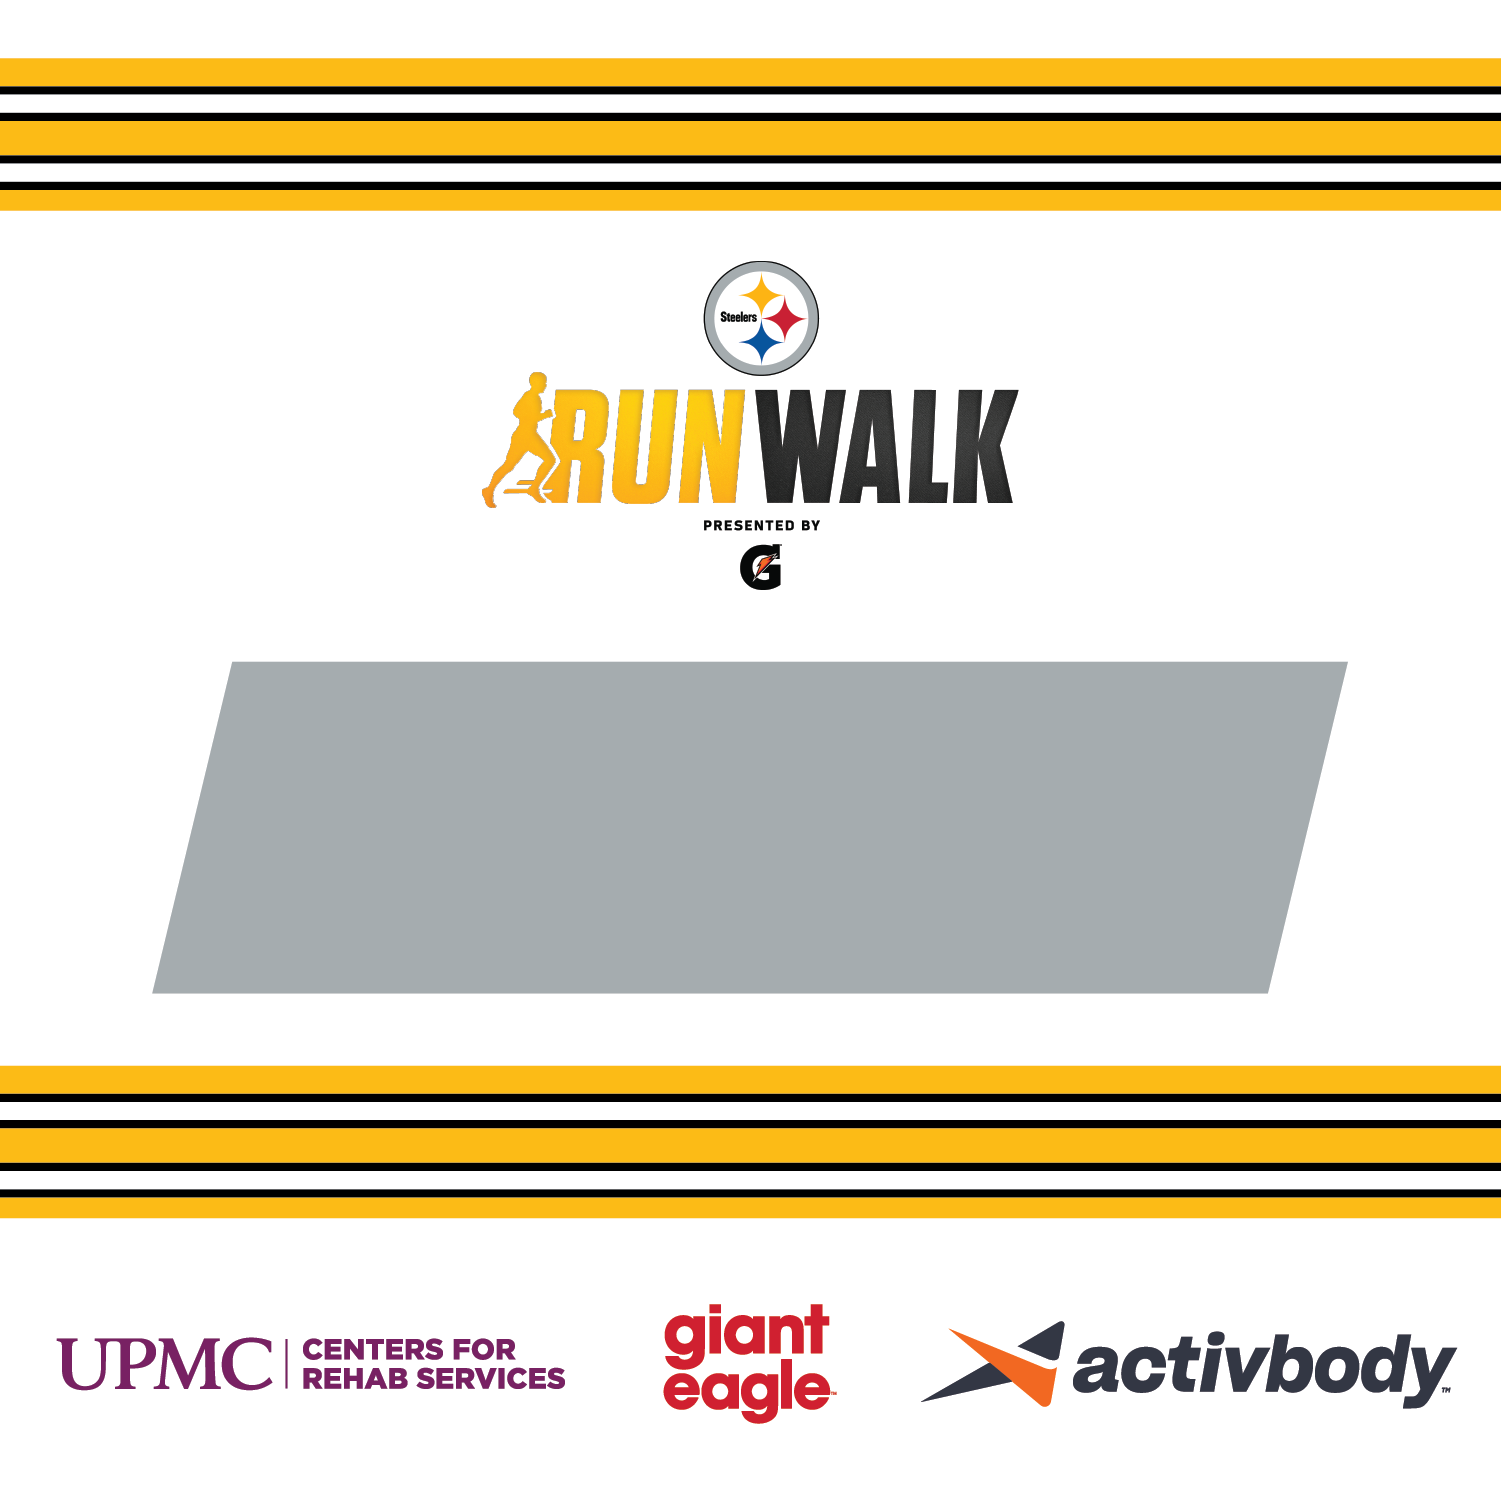 Steelers Run & Walk presented by Gatorade Pittsburgh Steelers